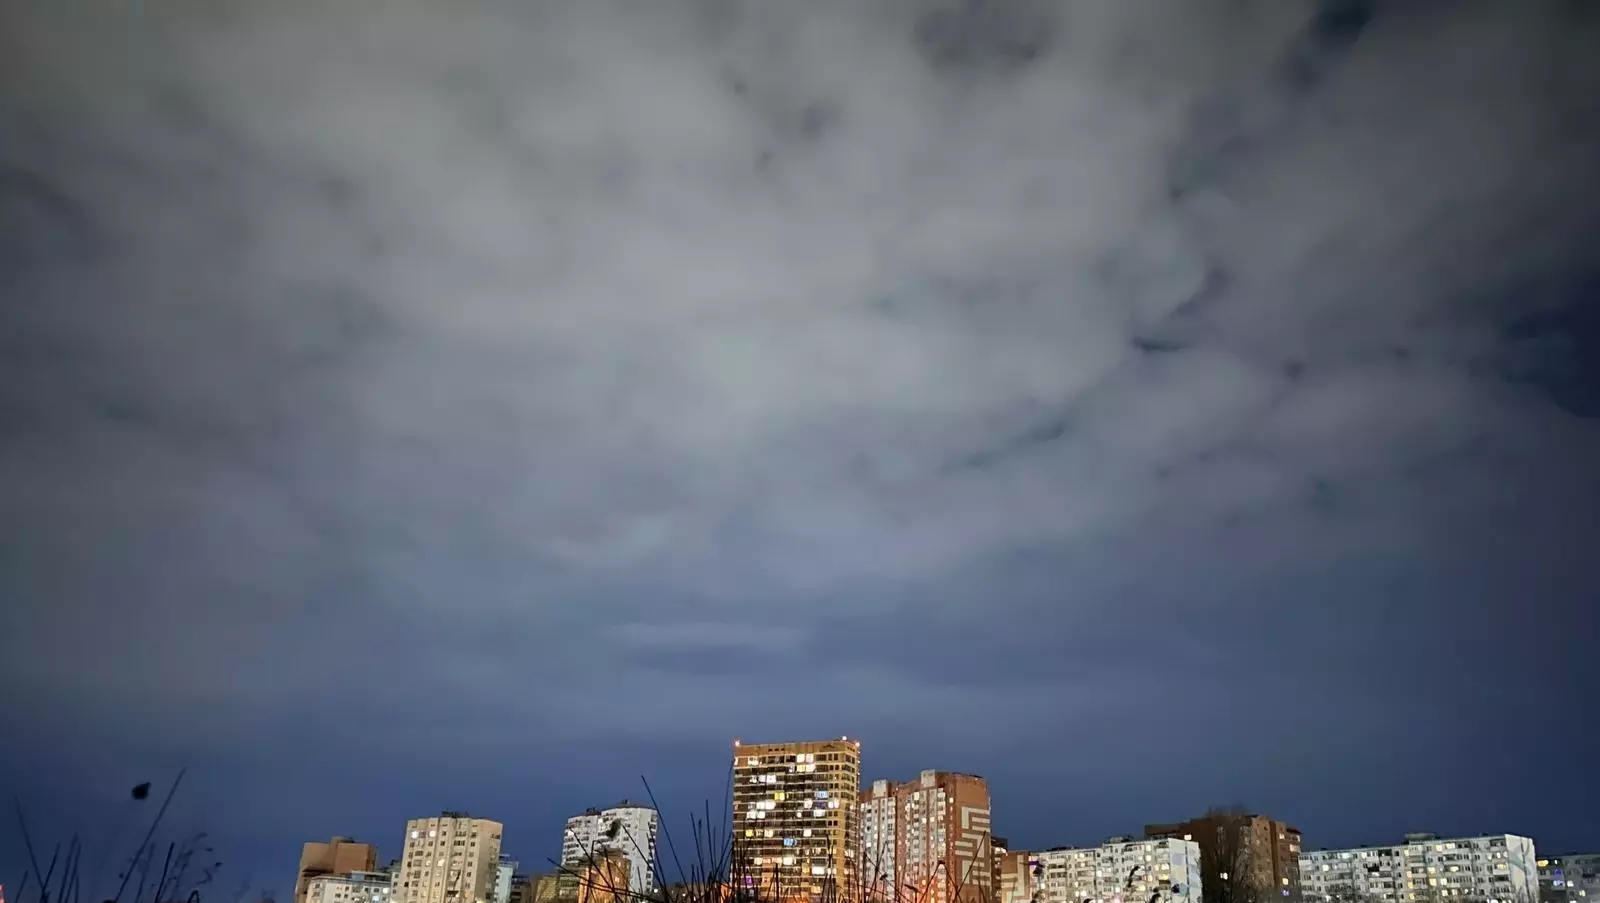 «Услышали грохот»: звук взрыва испугал жителей нескольких районов в Ростове